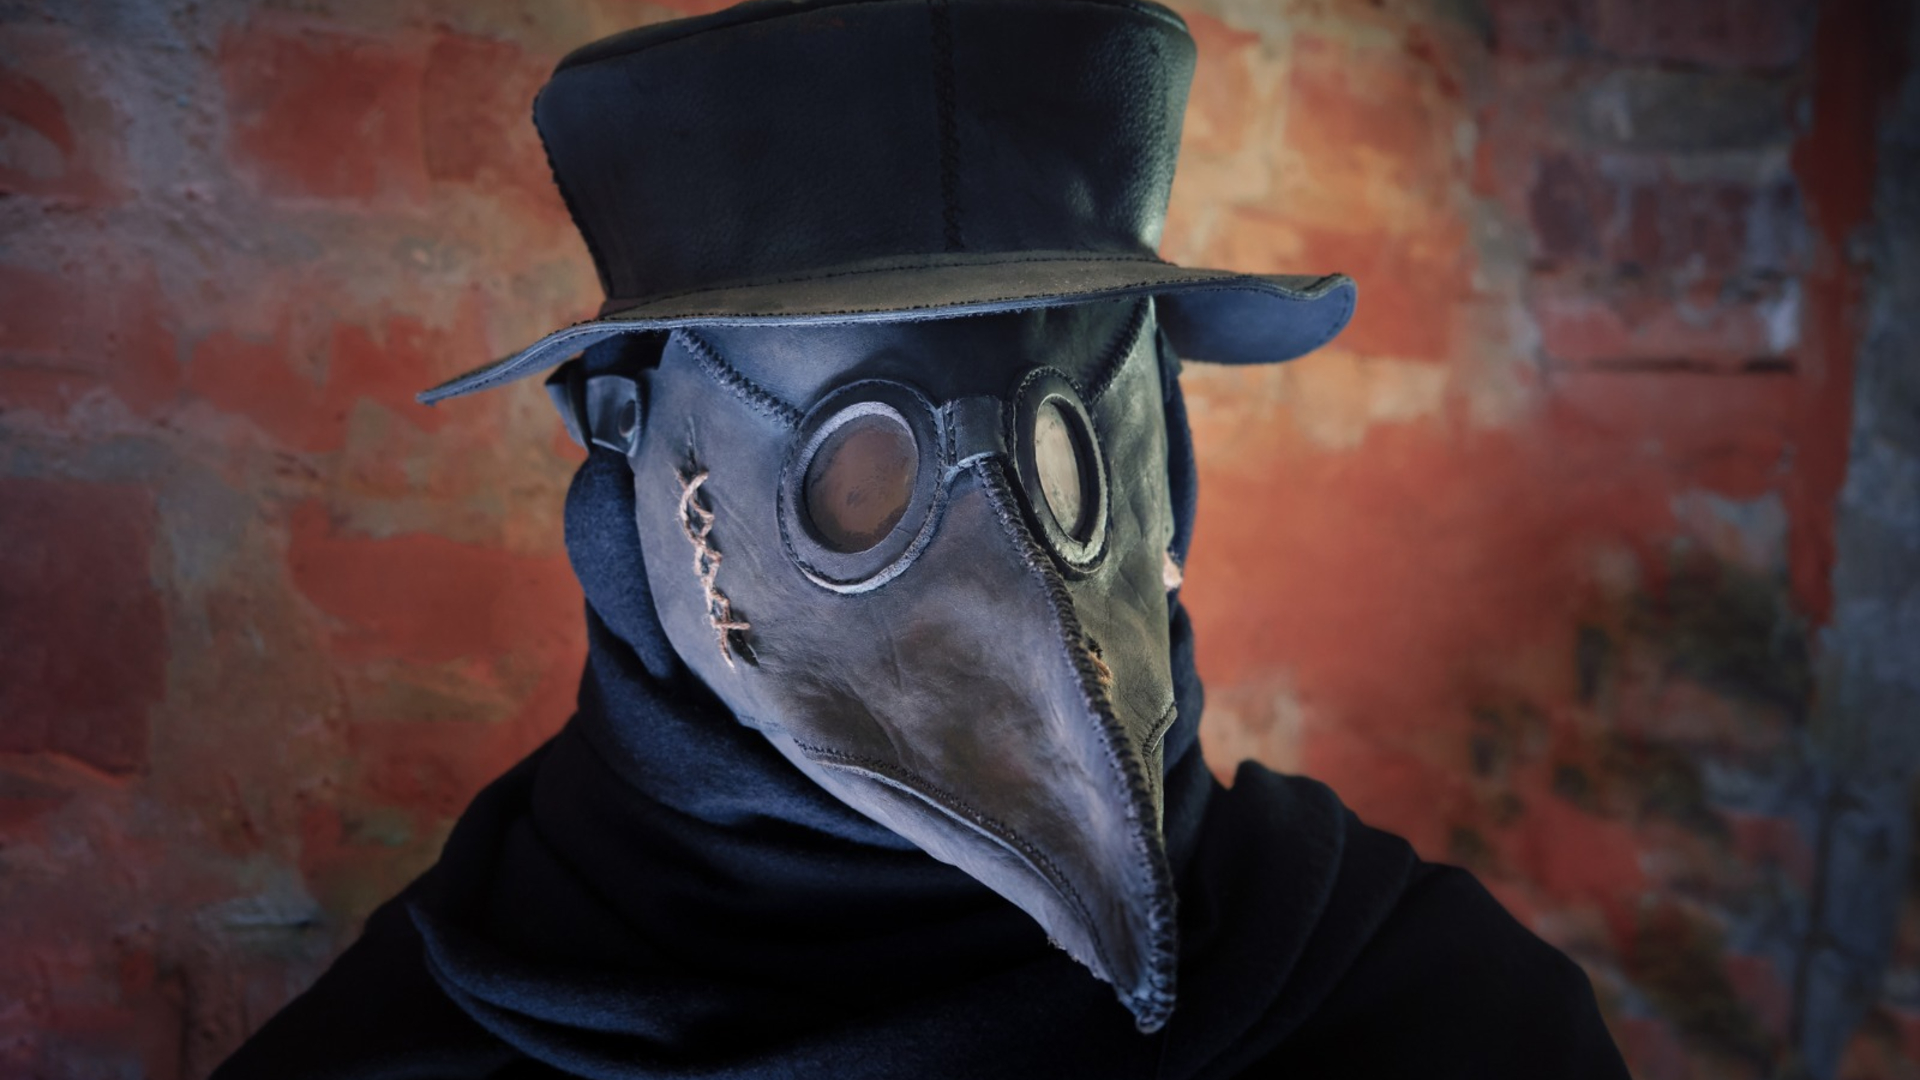 De dónde vienen las siniestras máscaras de la peste negra?